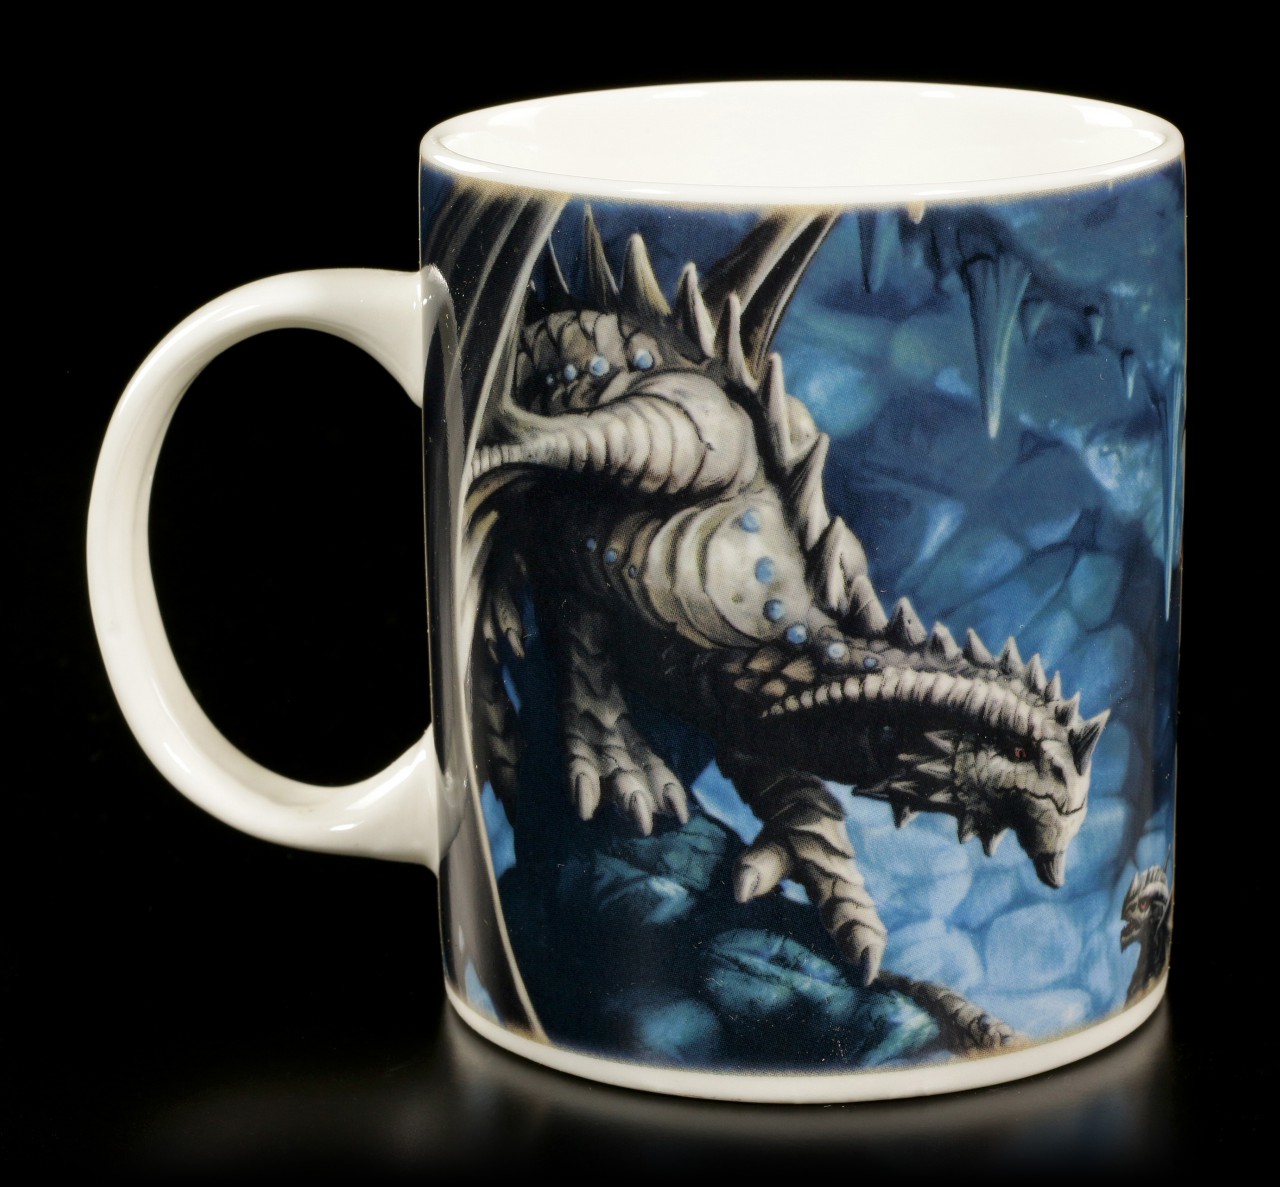 Age of Dragons Mug - Rock Dragon